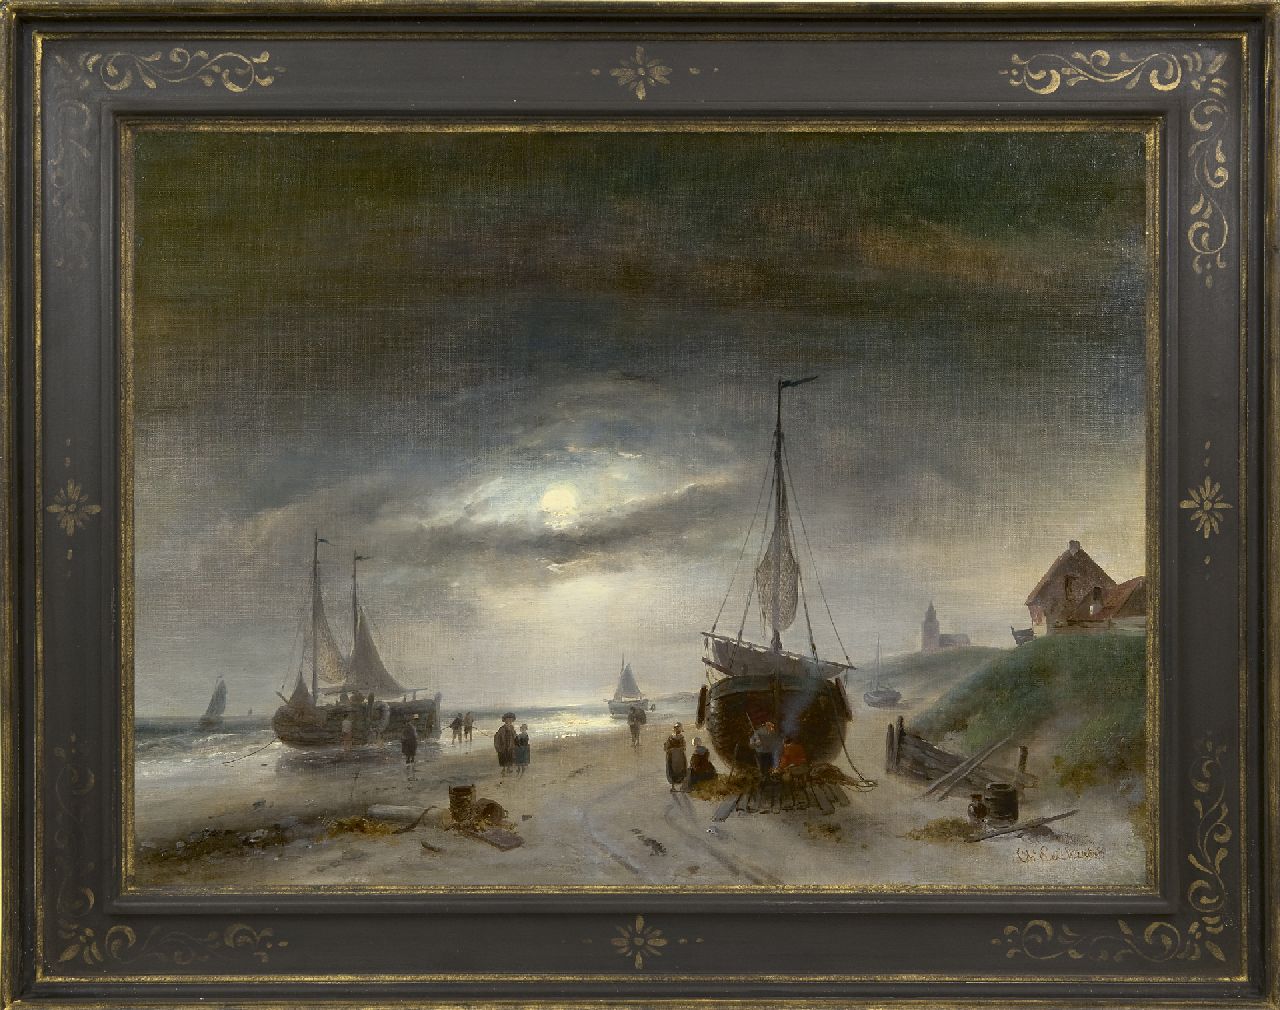 Leickert C.H.J.  | 'Charles' Henri Joseph Leickert | Schilderijen te koop aangeboden | Vissers en schepen op het strand van Scheveningen, bij maanlicht, olieverf op doek 48,6 x 65,6 cm, gesigneerd rechtsonder